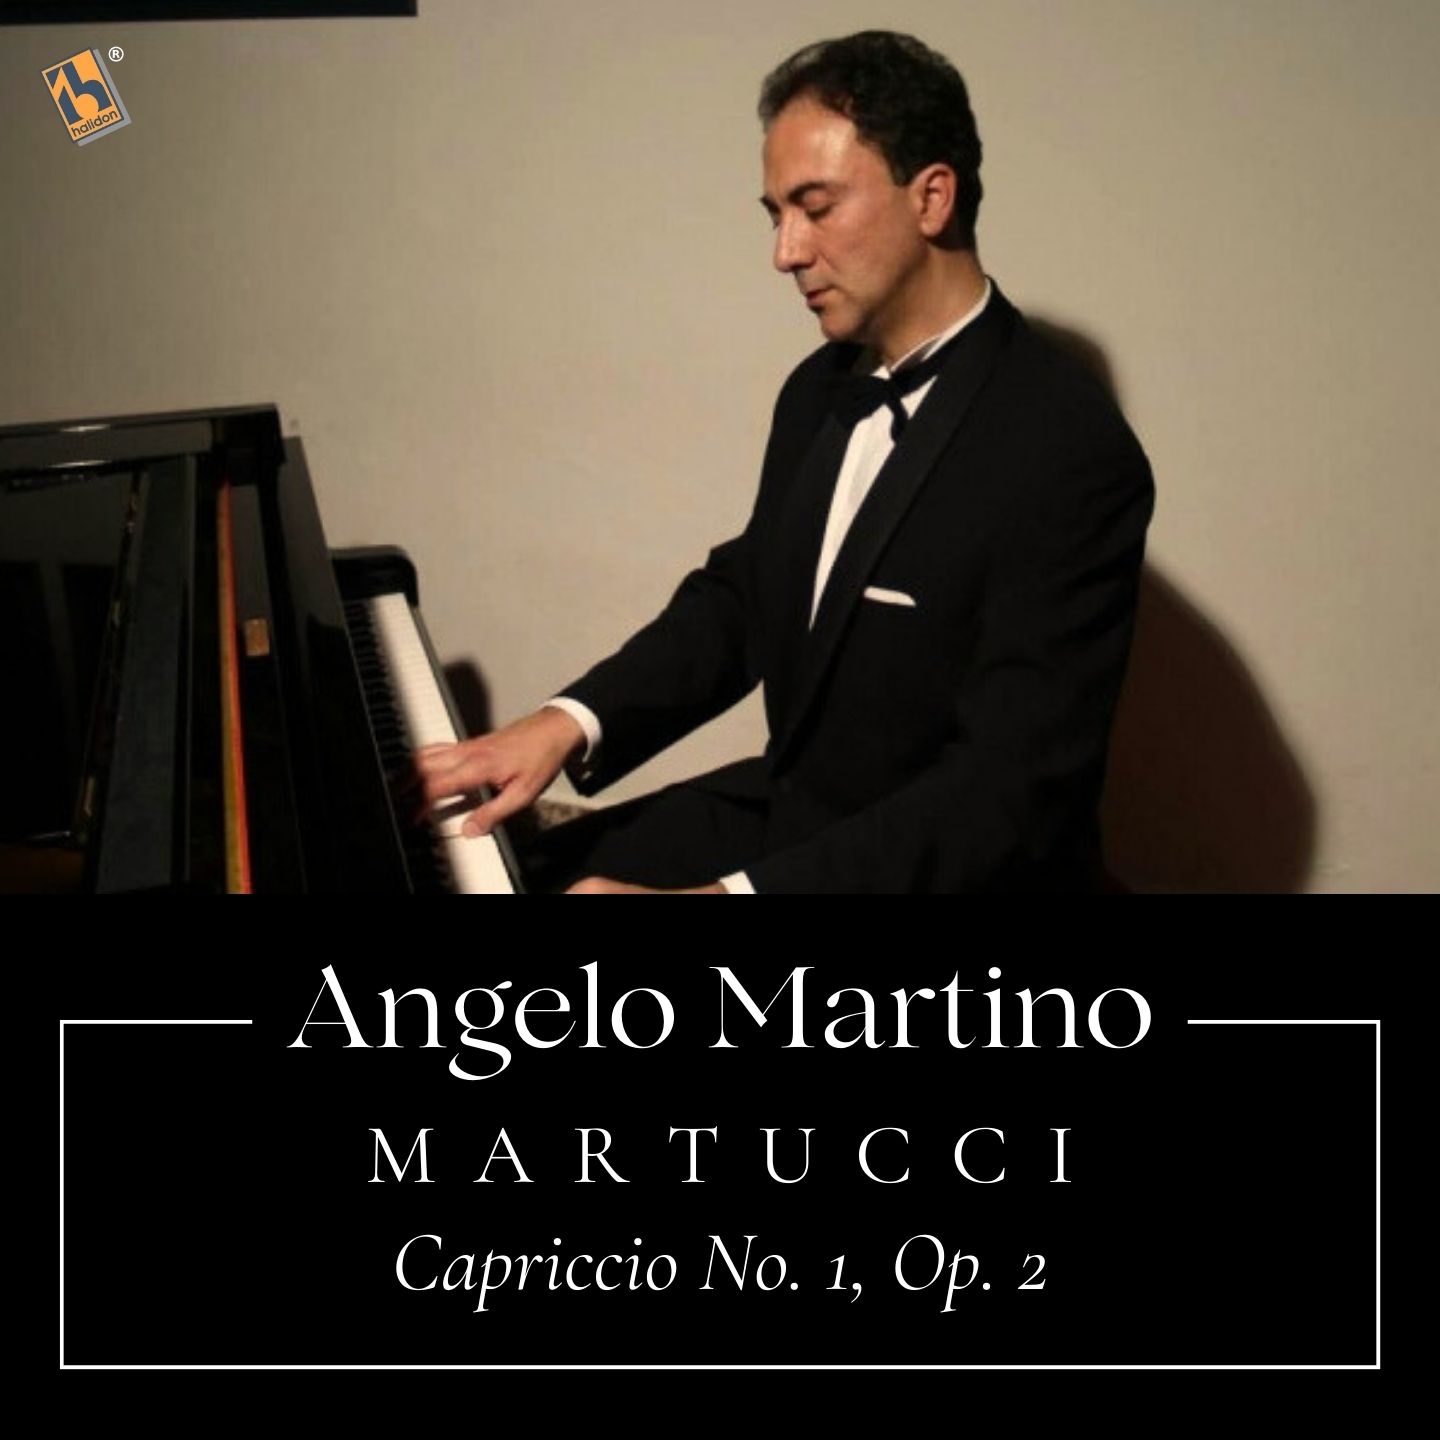 Martucci: Capriccio No. 1, Op. 2